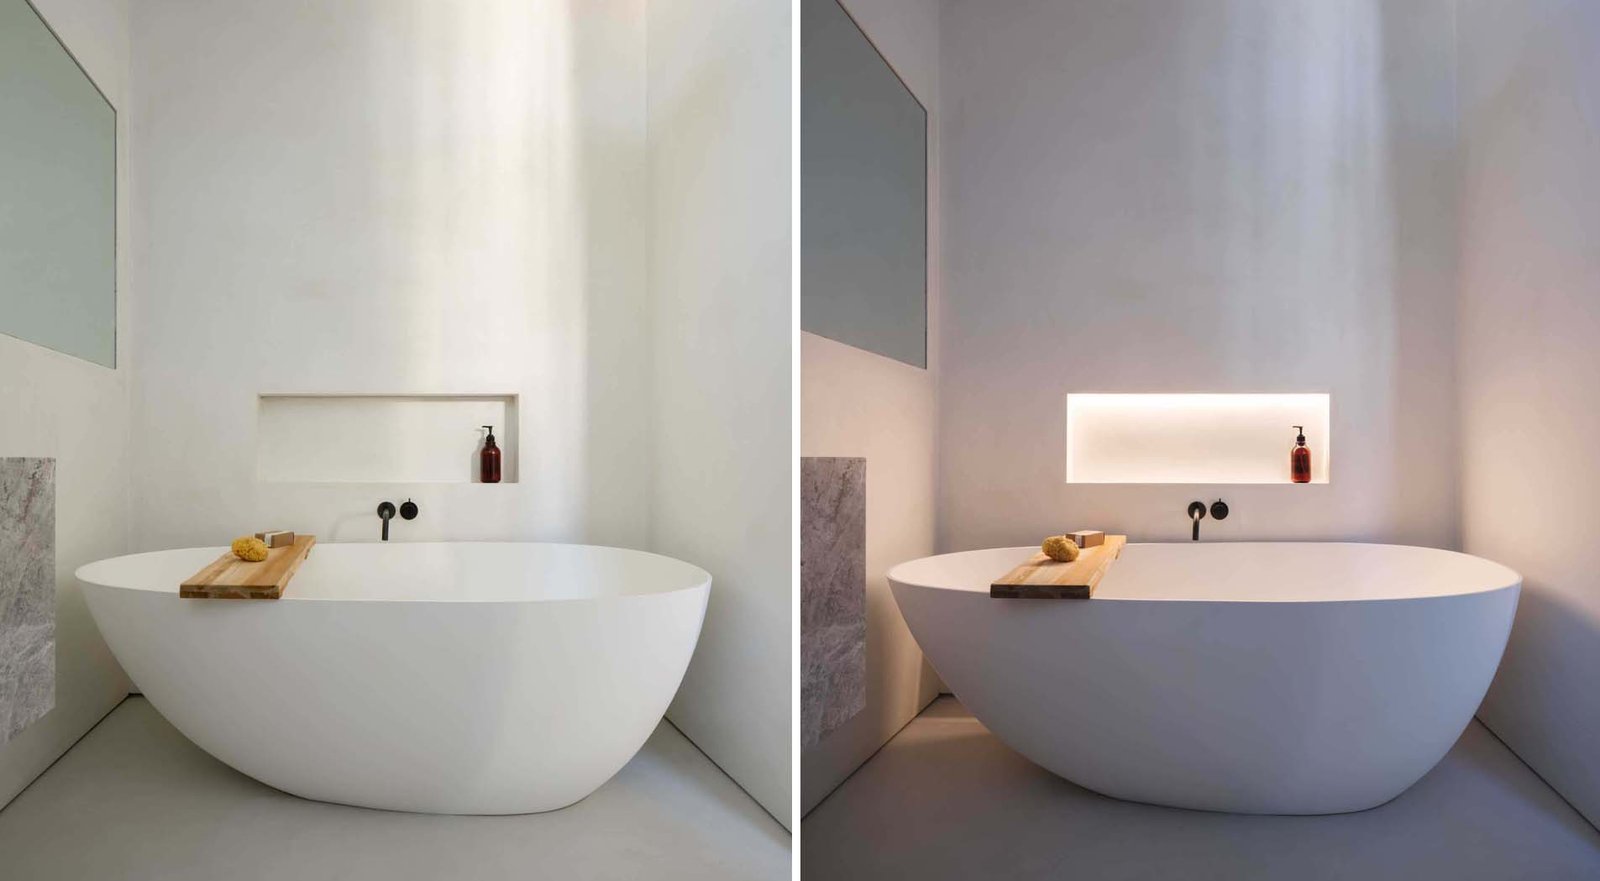 تم بناء مكان للرفوف مع إضاءة LED مخفية في الجدار بجوار حوض الاستحمام المستقل في هذا الحمام الحديث ، مما يسمح بوضع أشياء مثل الصابون في متناول اليد.